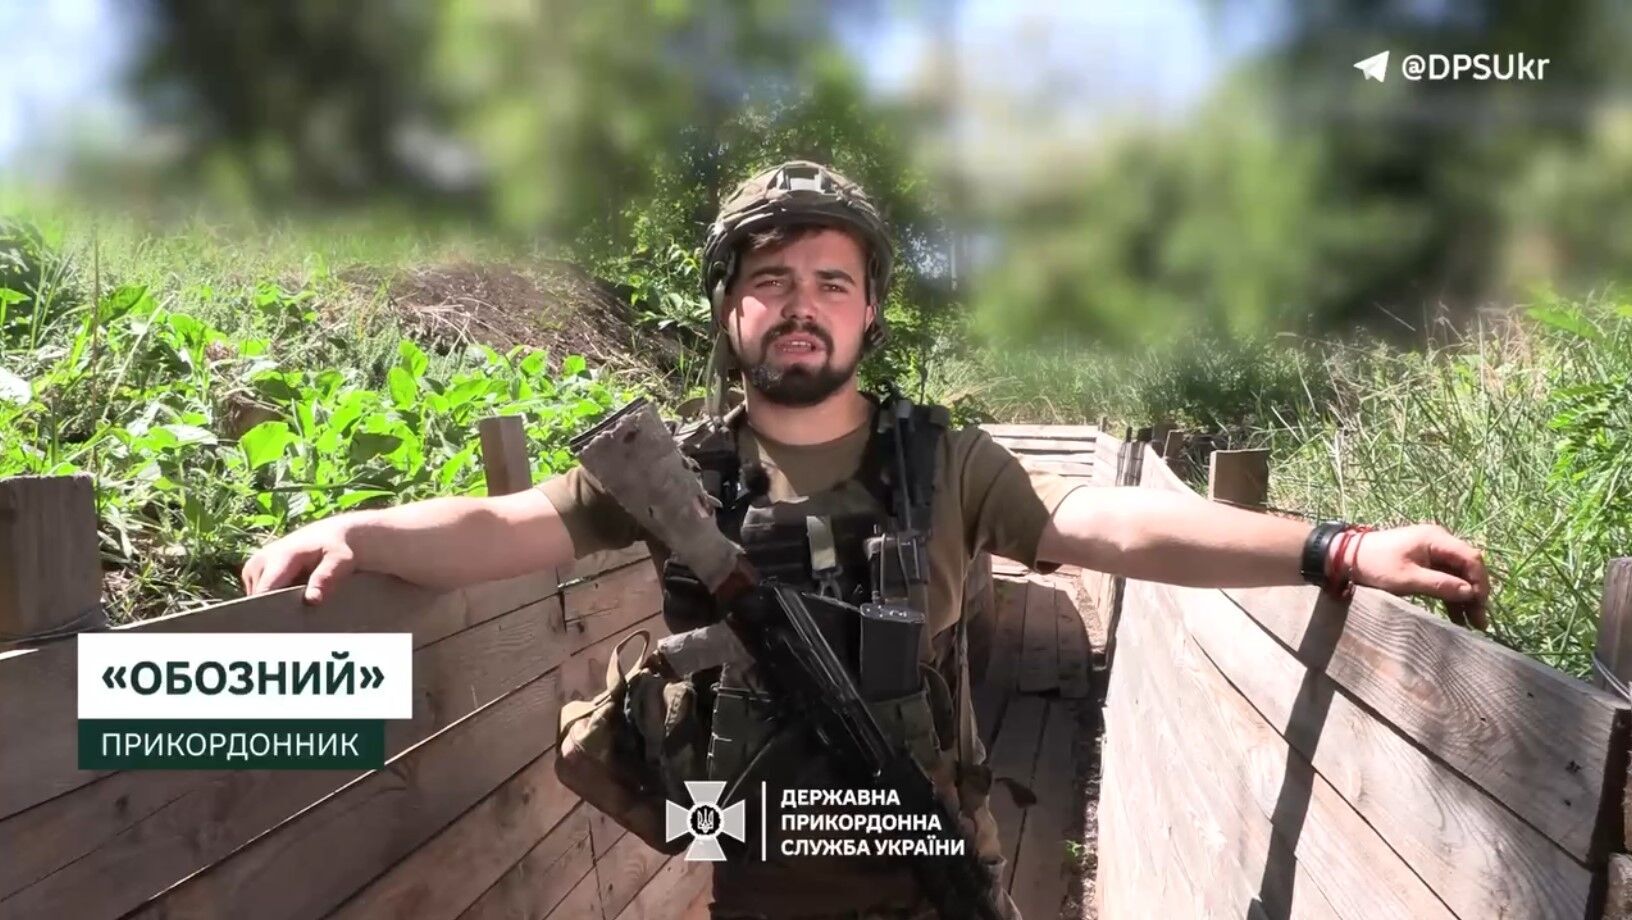 Кричал, что свой: житель Луганщины, мобилизованный оккупантами, вышел на позиции украинских пограничников. Видео